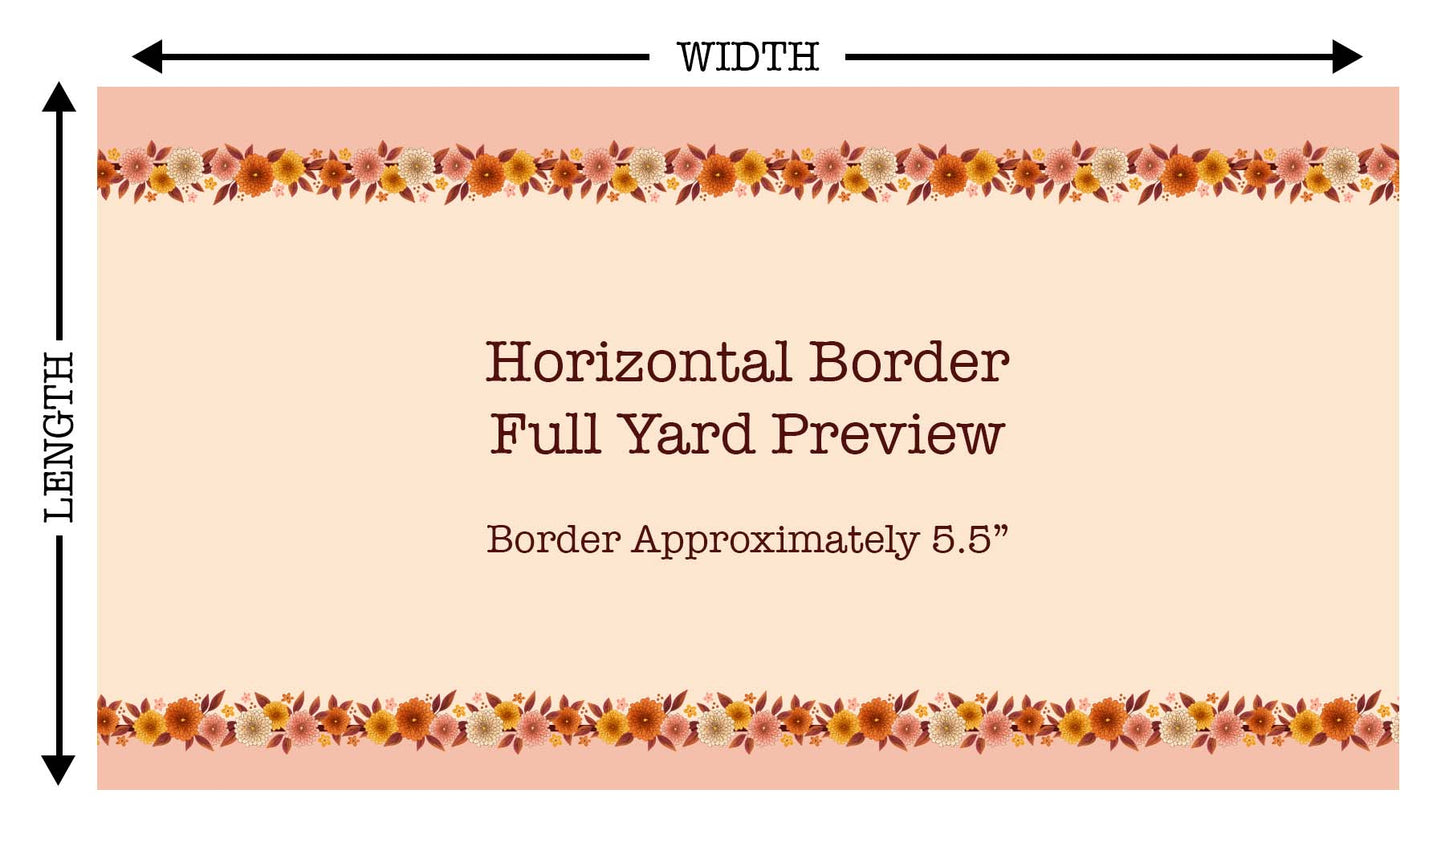 Fall Y'all Horizontal Border KW99